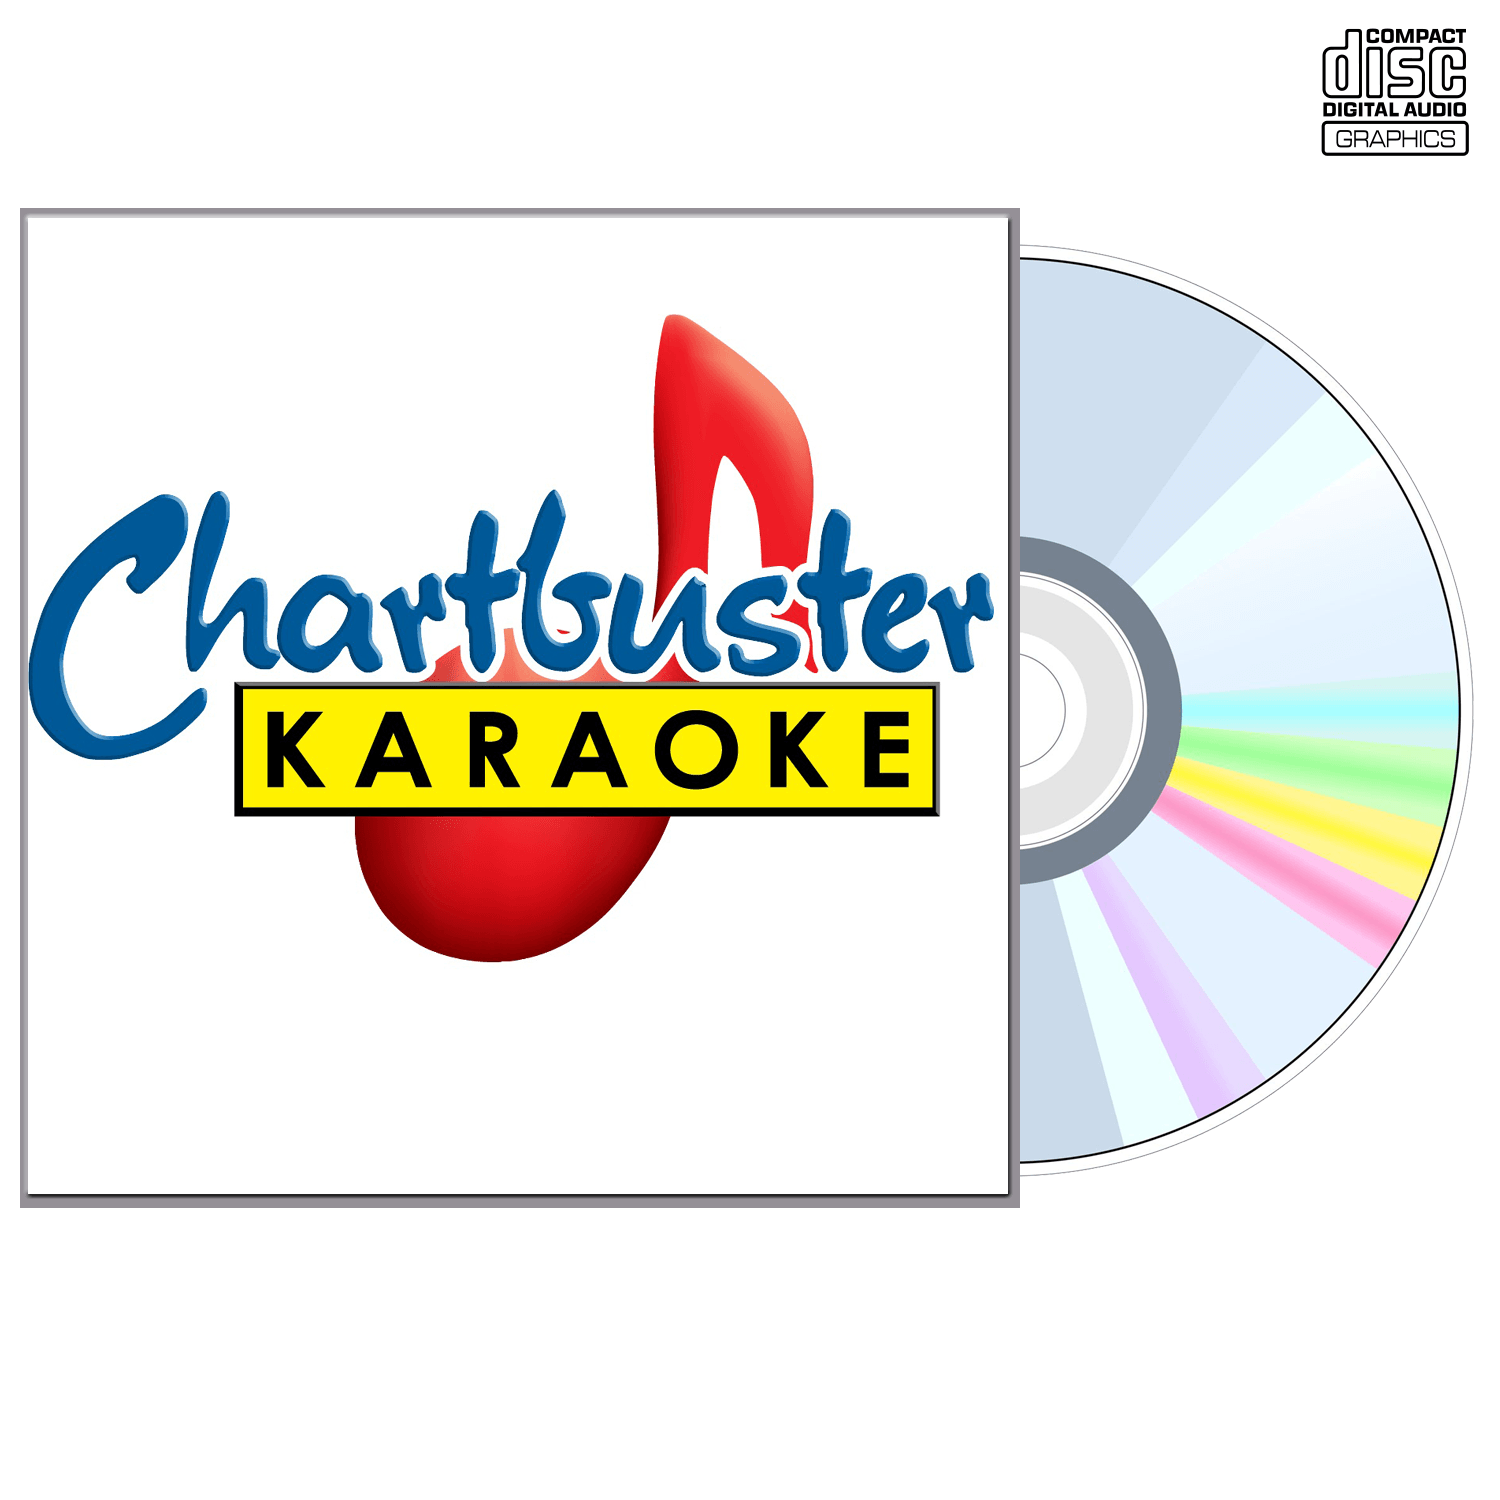 Tanya Tucker Vol 2 - CD+G - Chartbuster Karaoke - Karaoke Home Entertainment